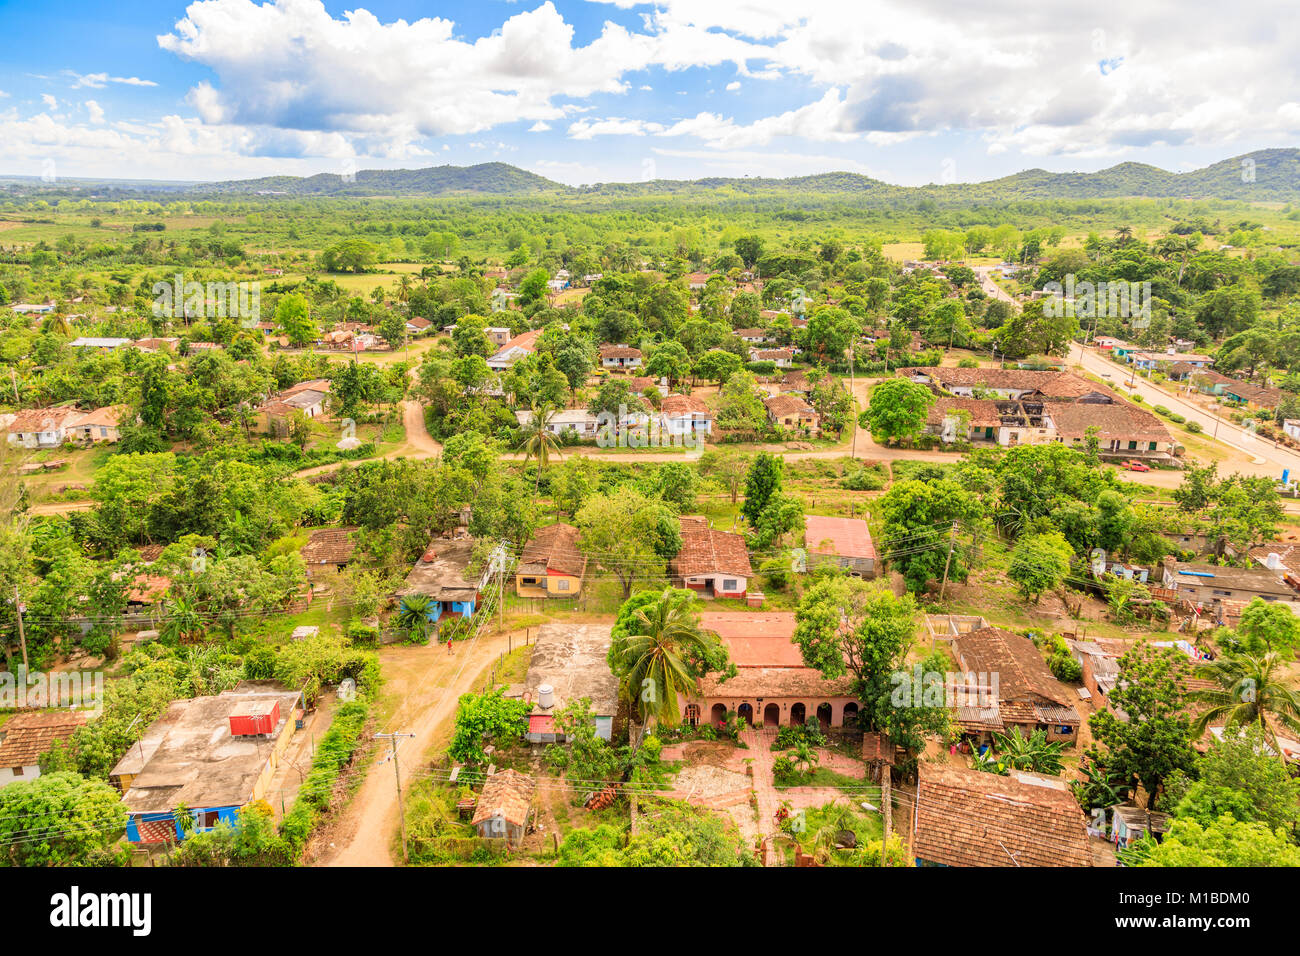 Vista da Manaca Iznaga torre al paesaggio circostante con ex schiavo e piantagioni di villaggio cubano nascosto tra gli alberi, vicino a Trinidad, Cuba Foto Stock